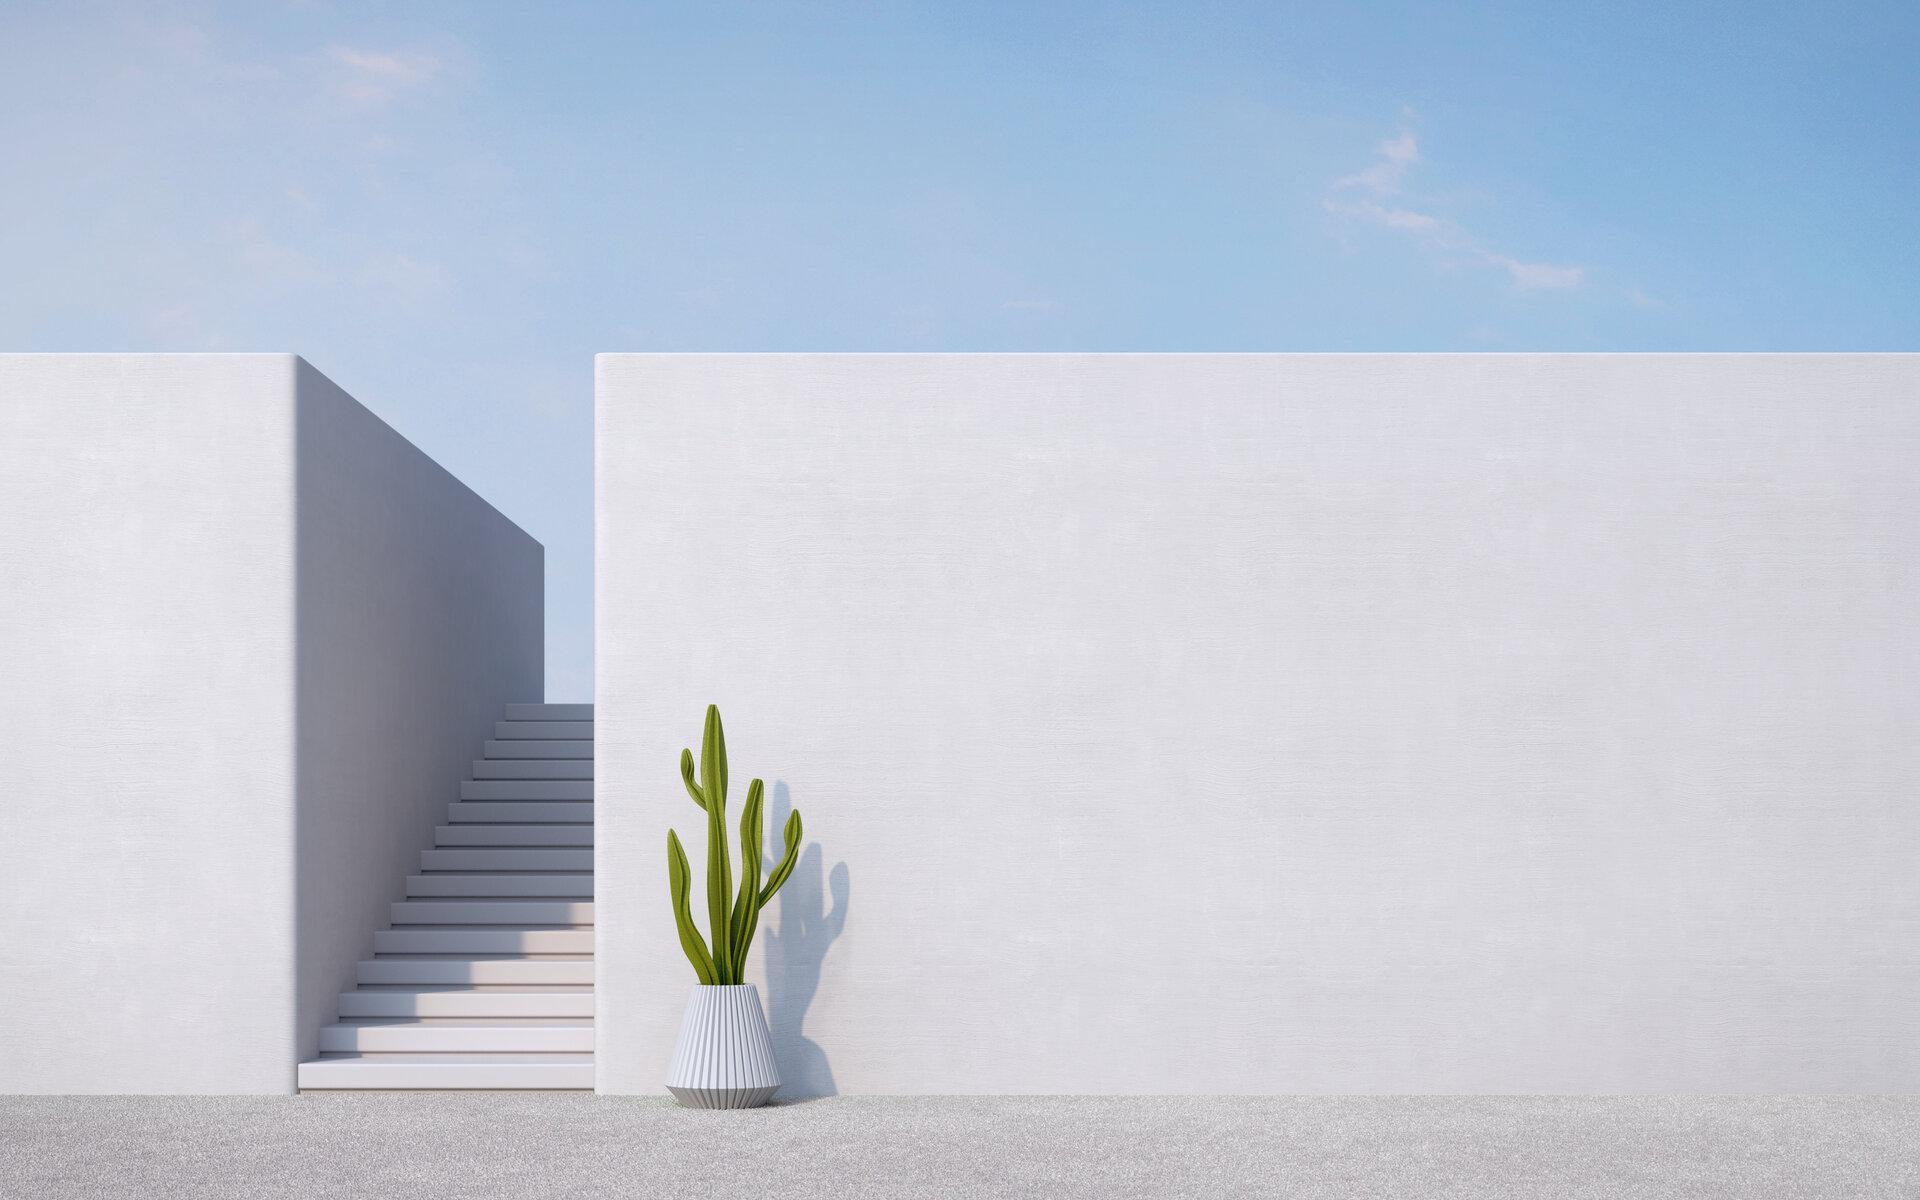 Betonwand mit Treppe, Kaktus und blauem Himmel, Architektur im minimalen Stil.